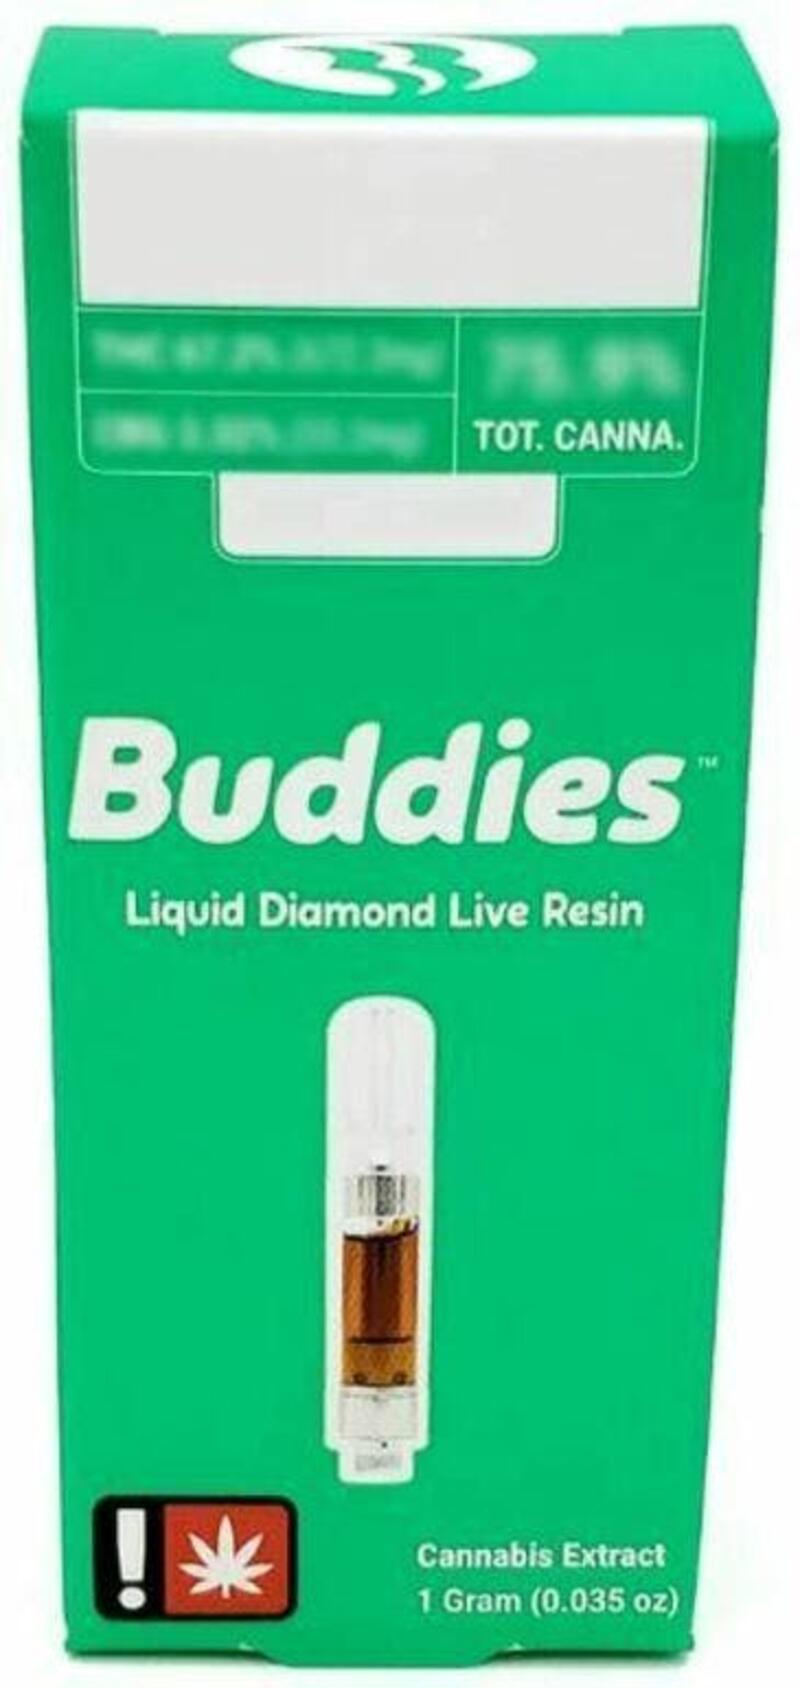 Buddies Liquid Diamonds Live Resin Cart 1g (I) Legend OG X Watermelon Zkittlez